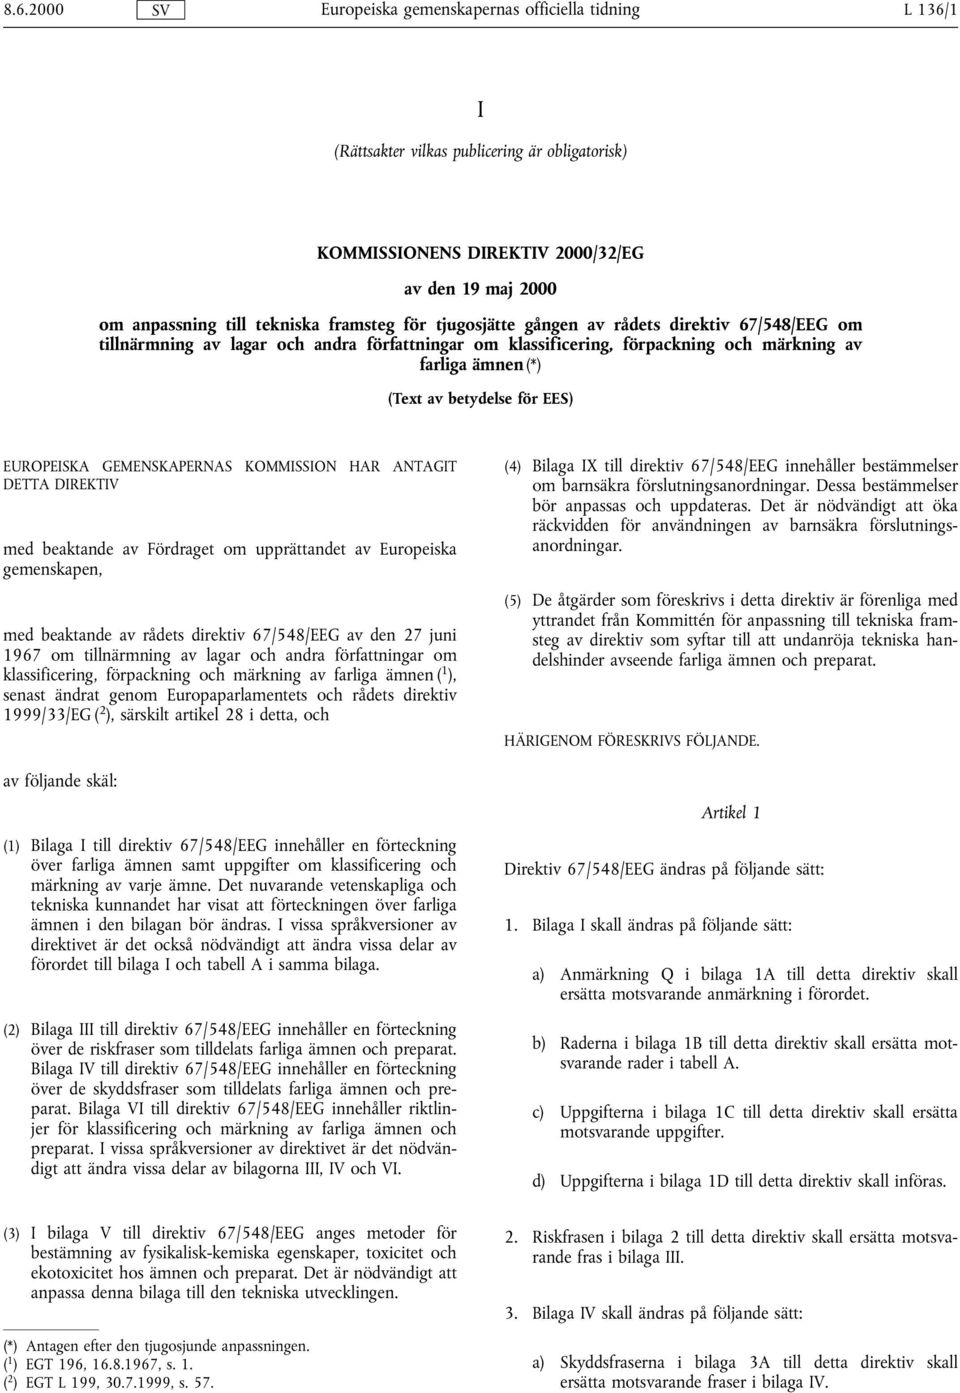 ANTAGIT DETTA DIREKTIV med beaktande av Fördraget om upprättandet av Europeiska gemenskapen, med beaktande av rådets direktiv 67/548/EEG av den 27 juni 1967 om tillnärmning av lagar och andra